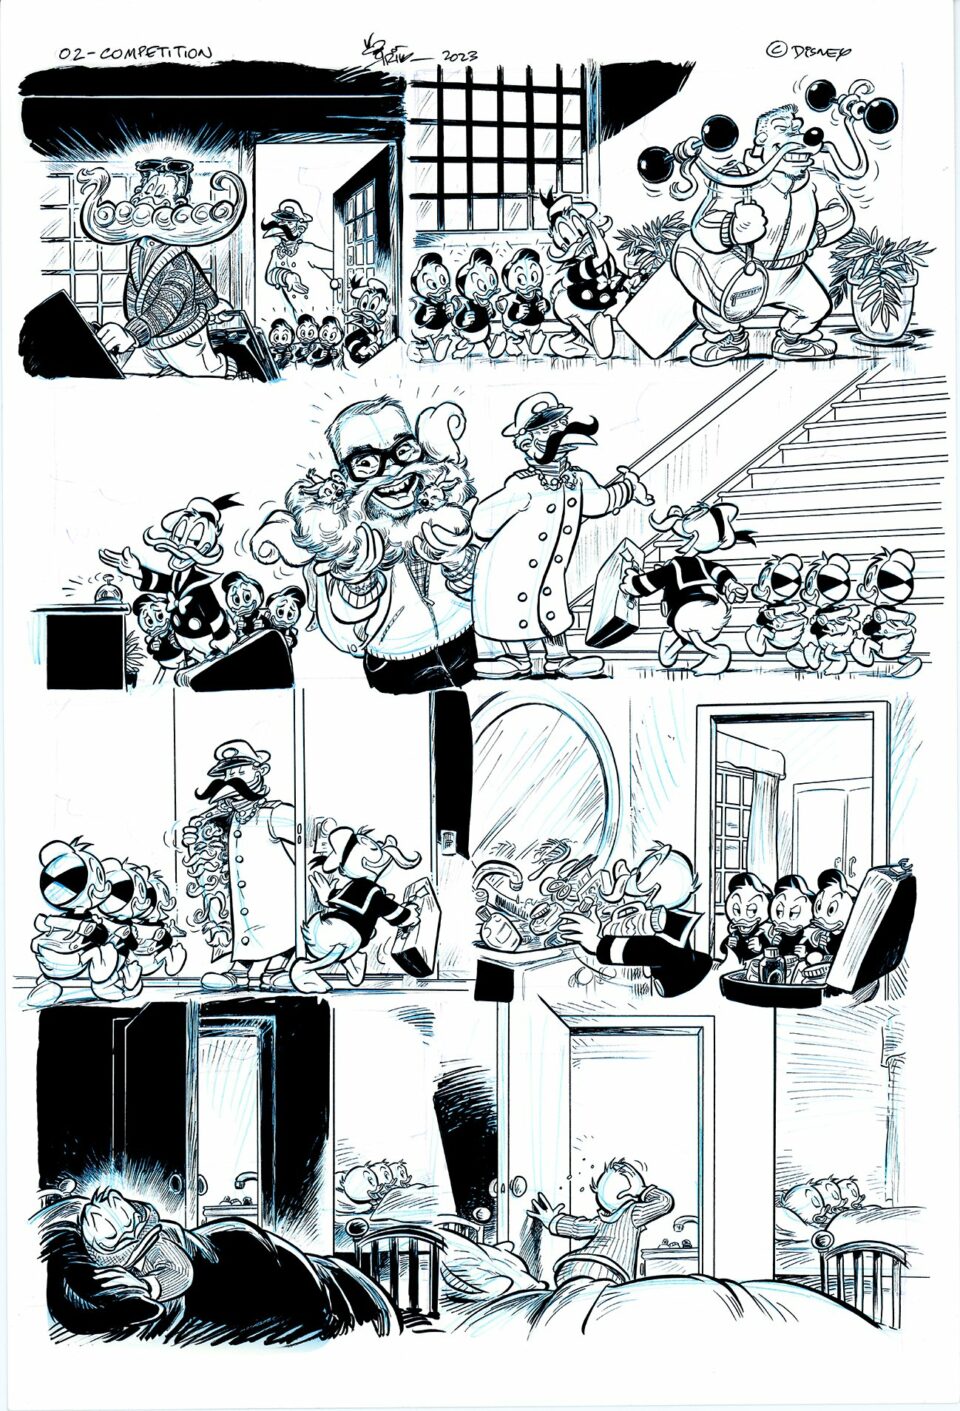 Tegneserie med ulike paneler med lekne scener av antropomorfe hundekarakterer i hjemmet og utendørs, illustrert i svart-hvitt.